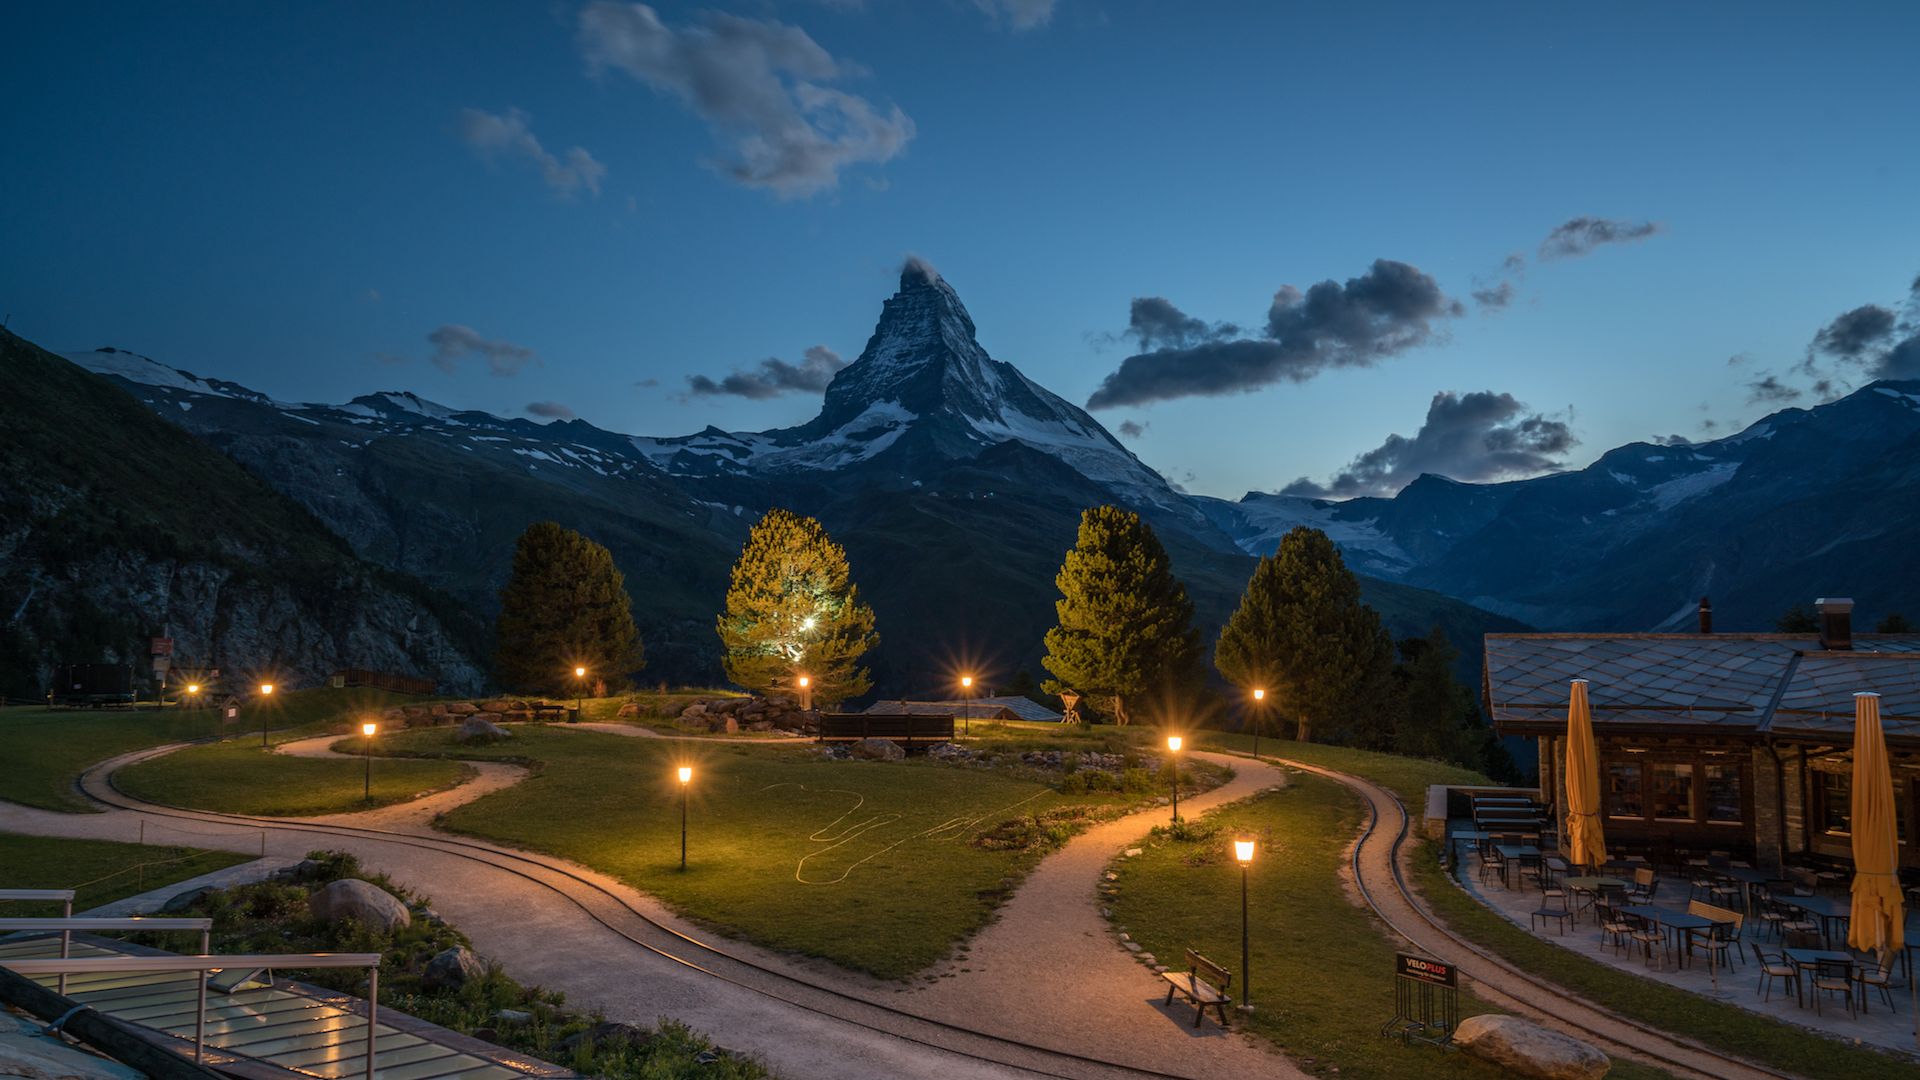 The Riffelalp Resort with a view of the Matterhorn on Gornergrat